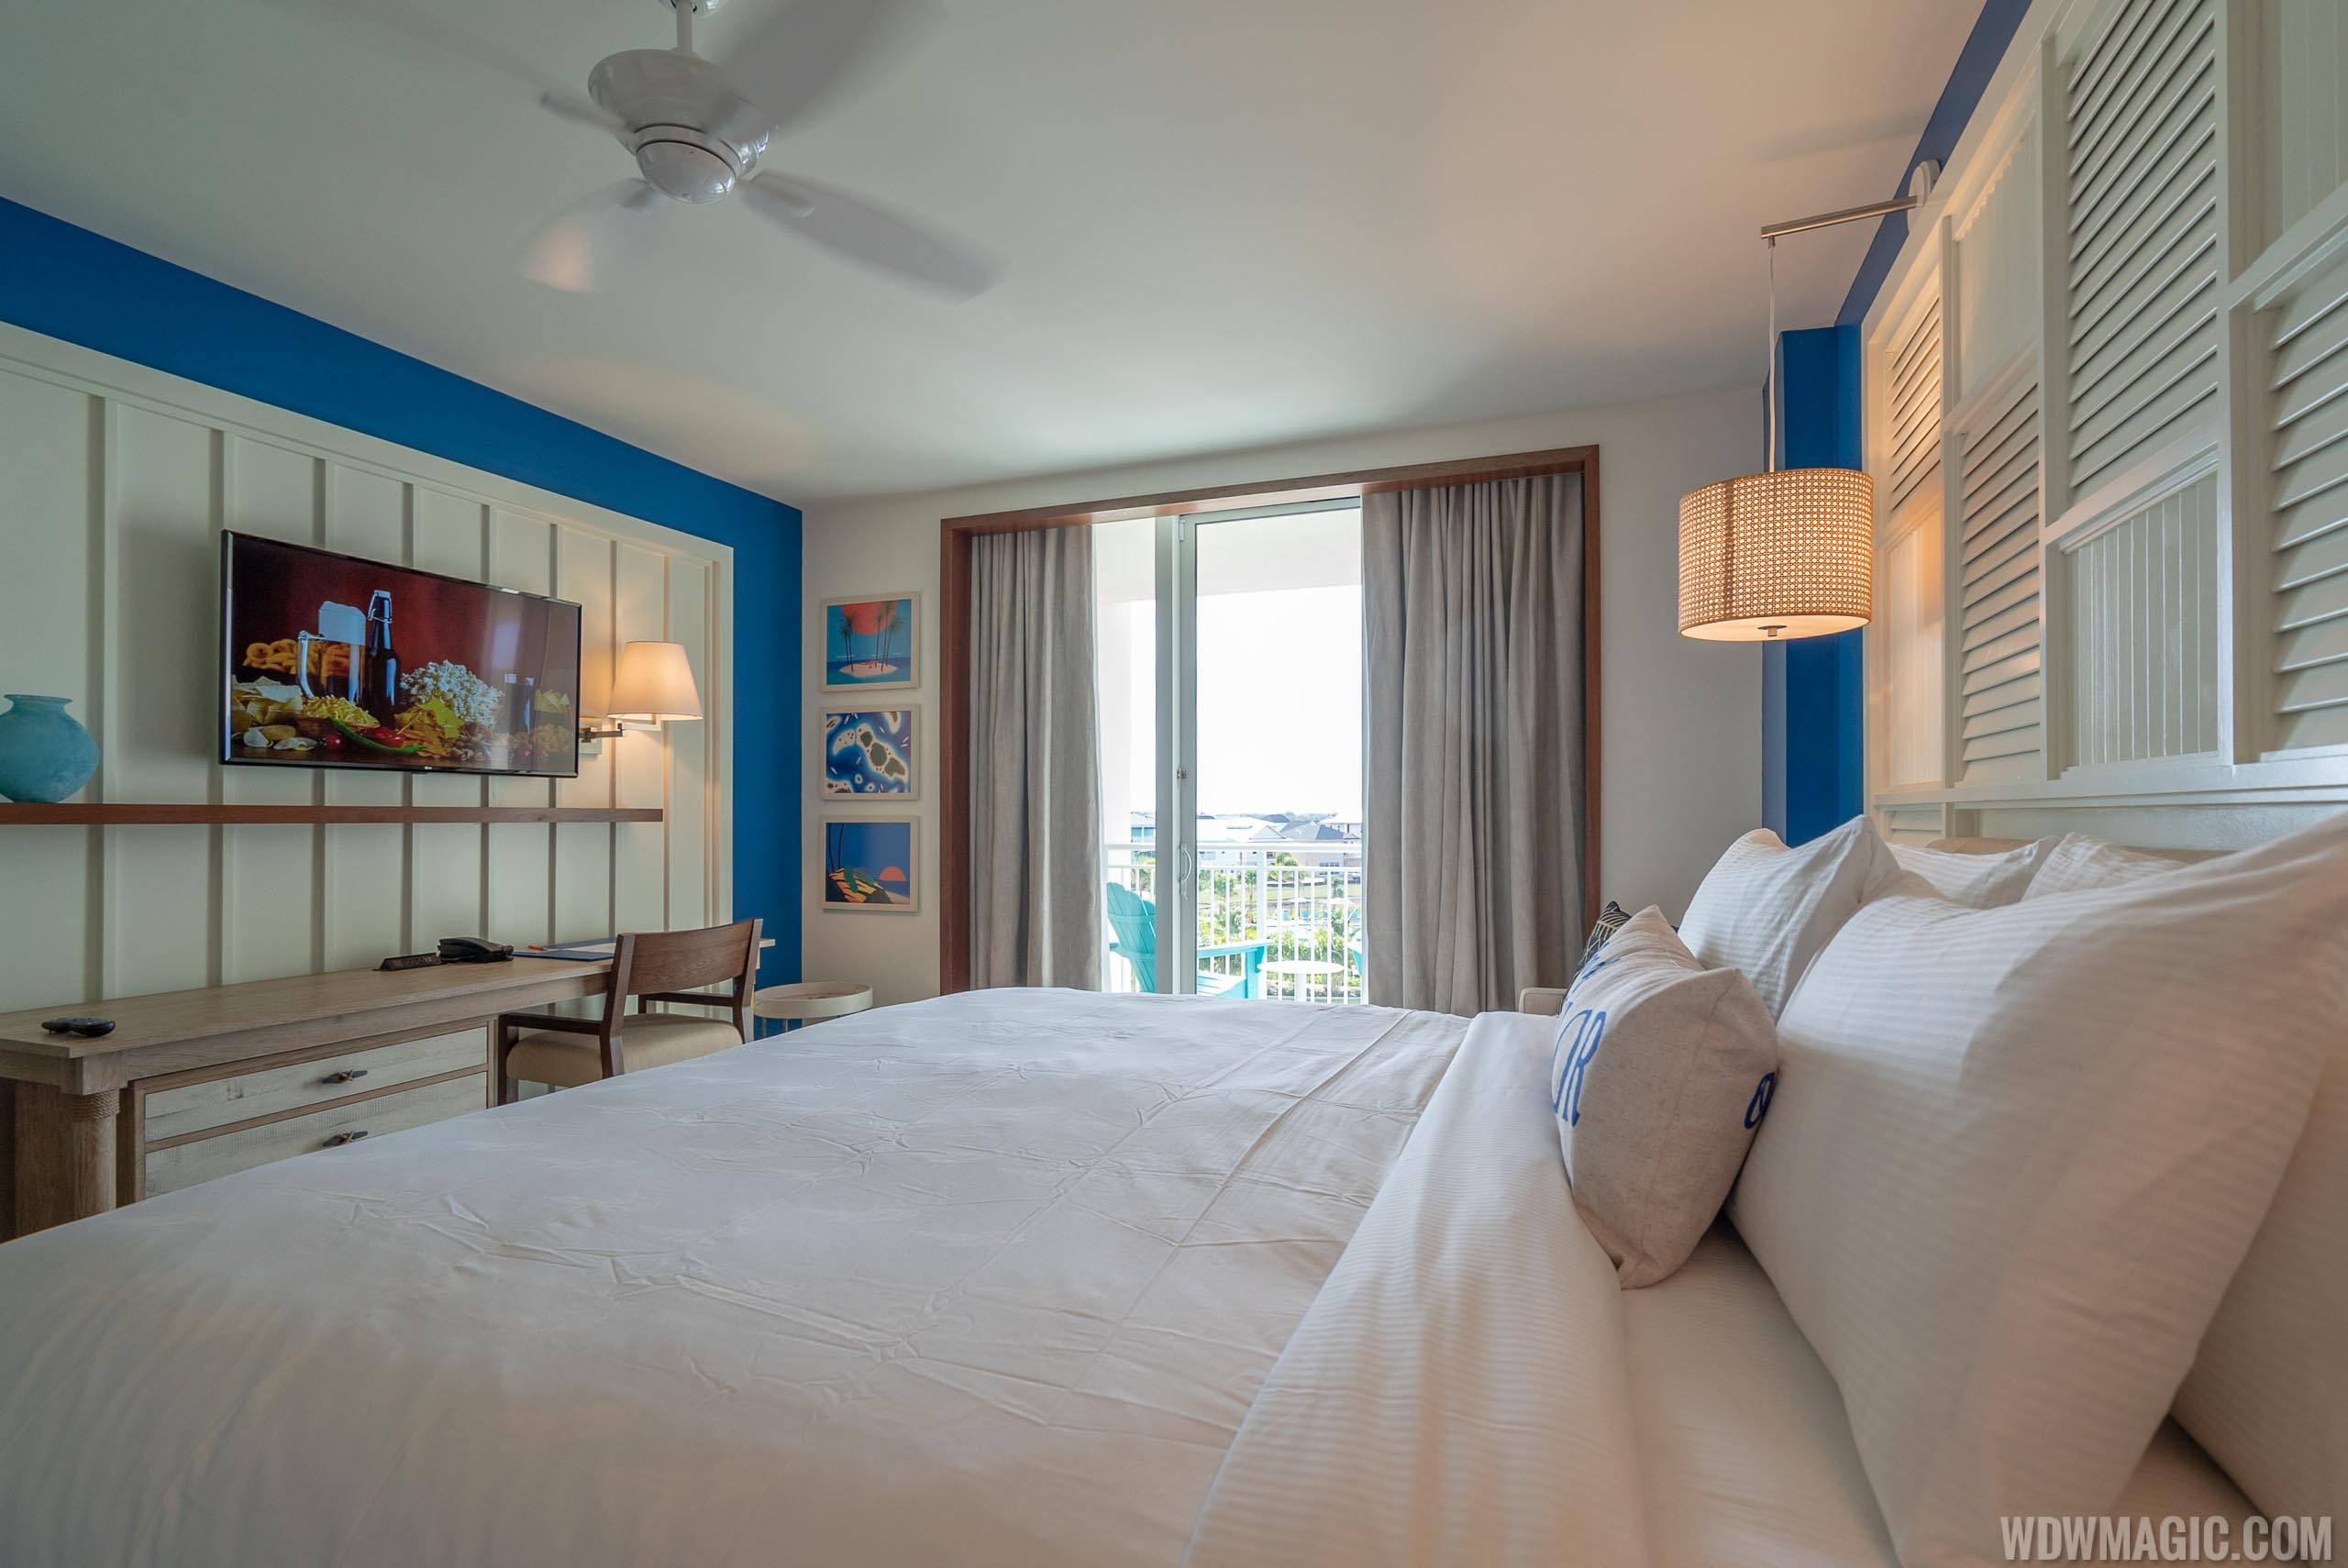 Margaritaville Resort Orlando - 1 Bedroom Suite Bedroom